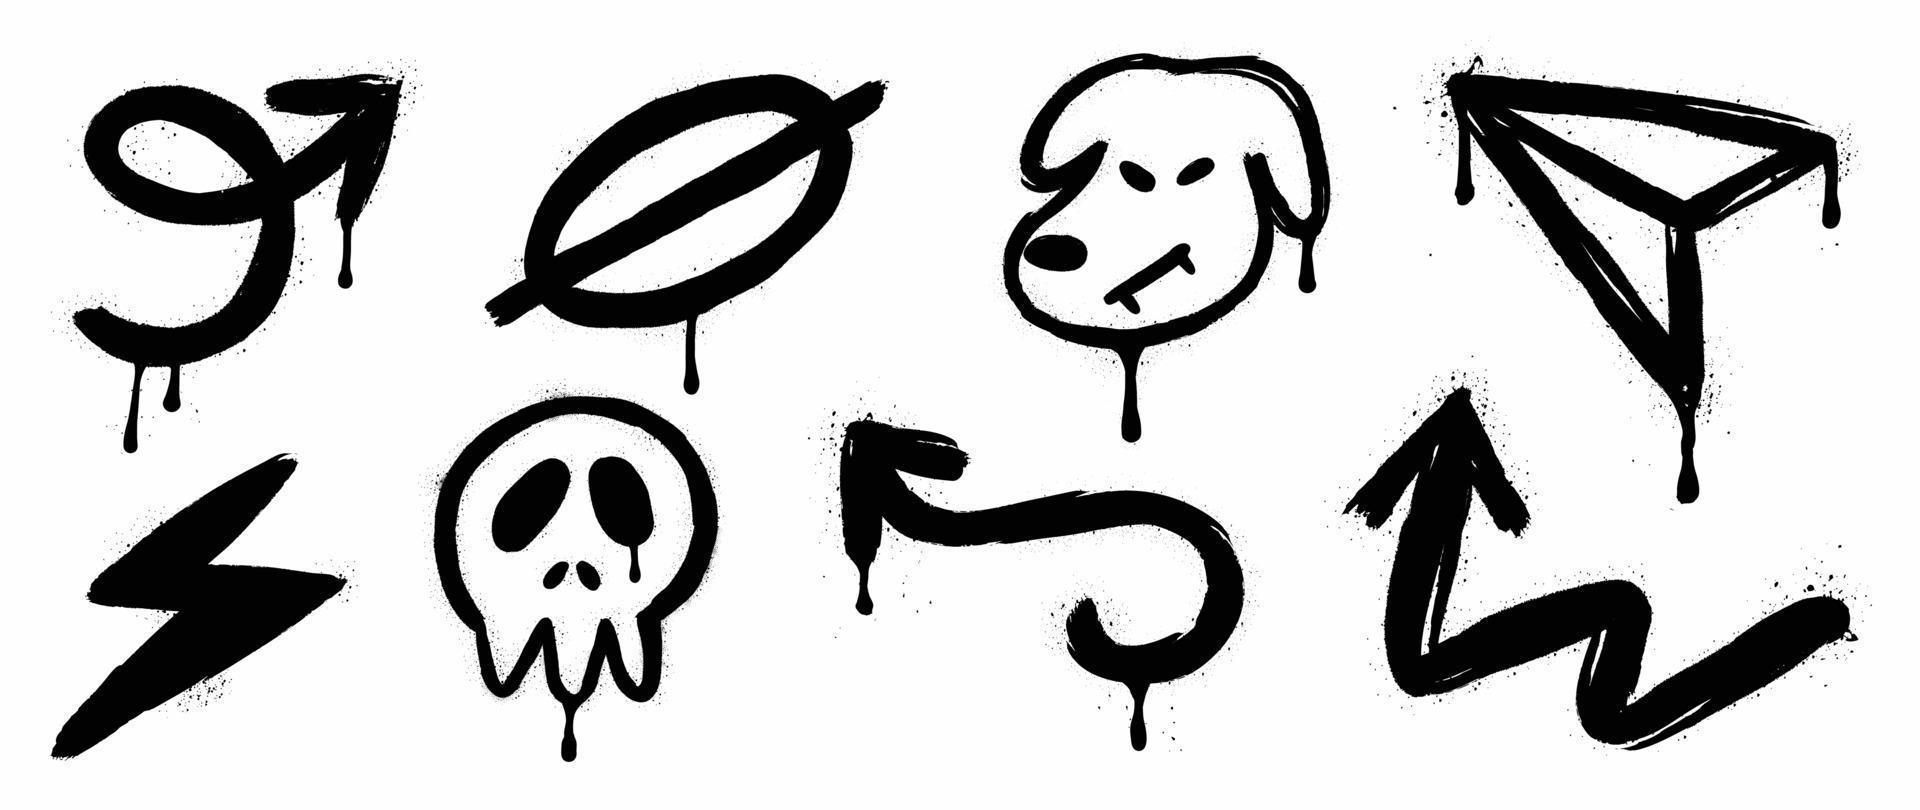 conjunto de ilustração em vetor padrão de spray de graffiti. coleção de seta de textura de spray, símbolo, cachorro, crânio, raio, papel de foguete. elementos em fundo branco para banner, decoração, arte de rua.